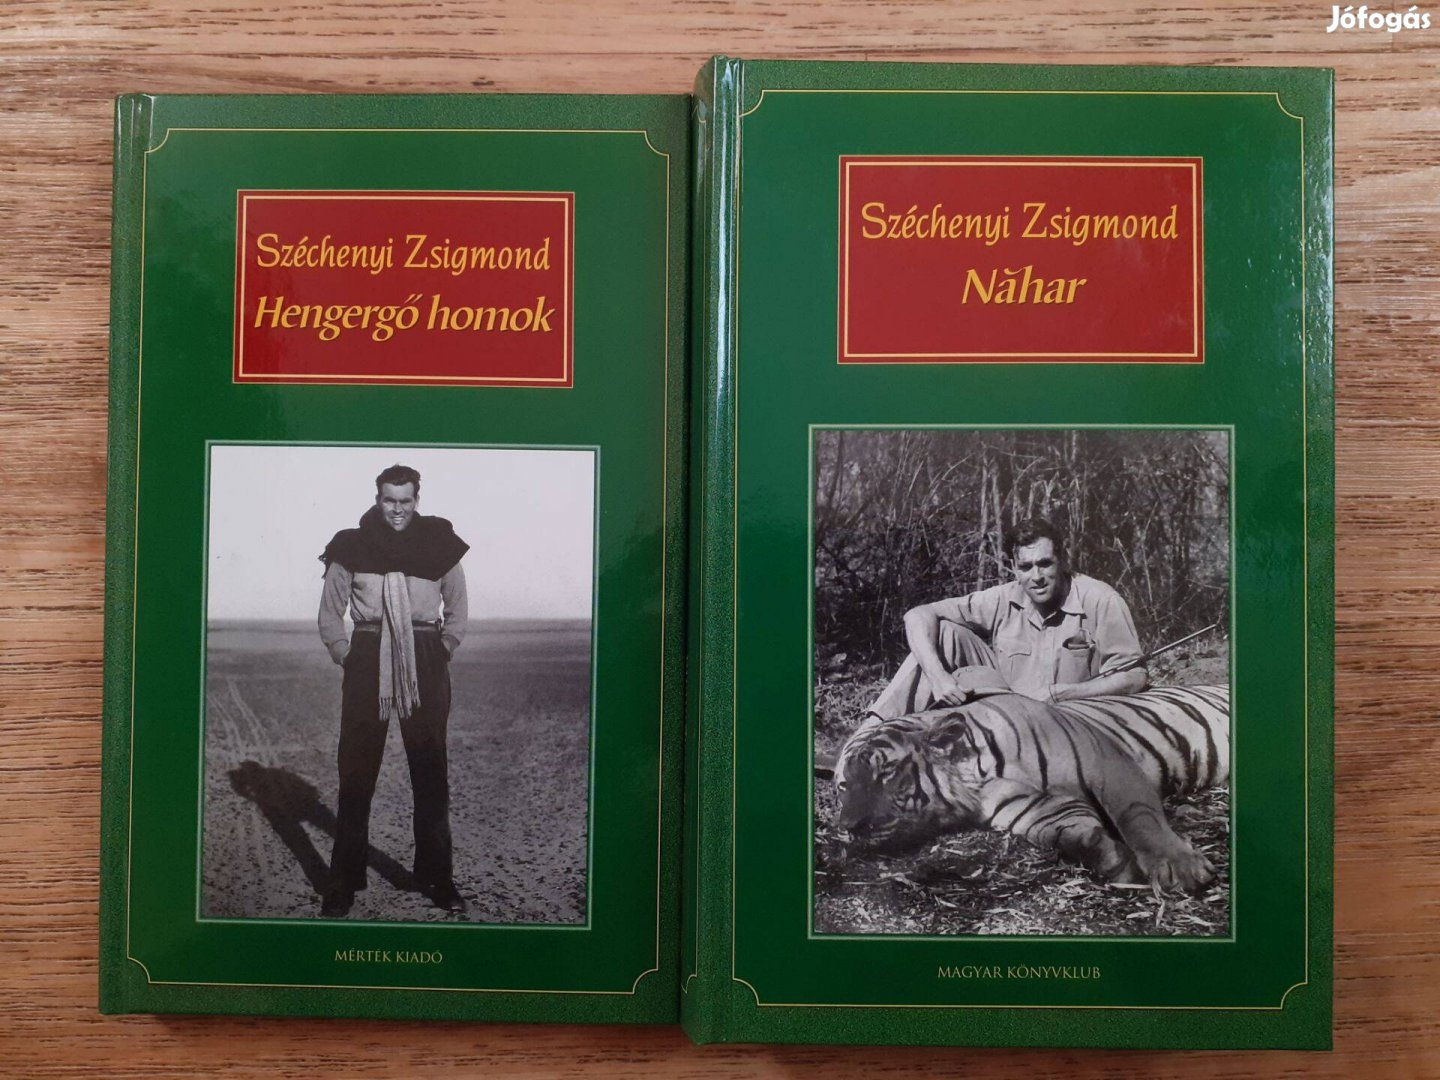 Széchenyi Zsigmond: Hengergő homok (2005) és Náhar (2002)